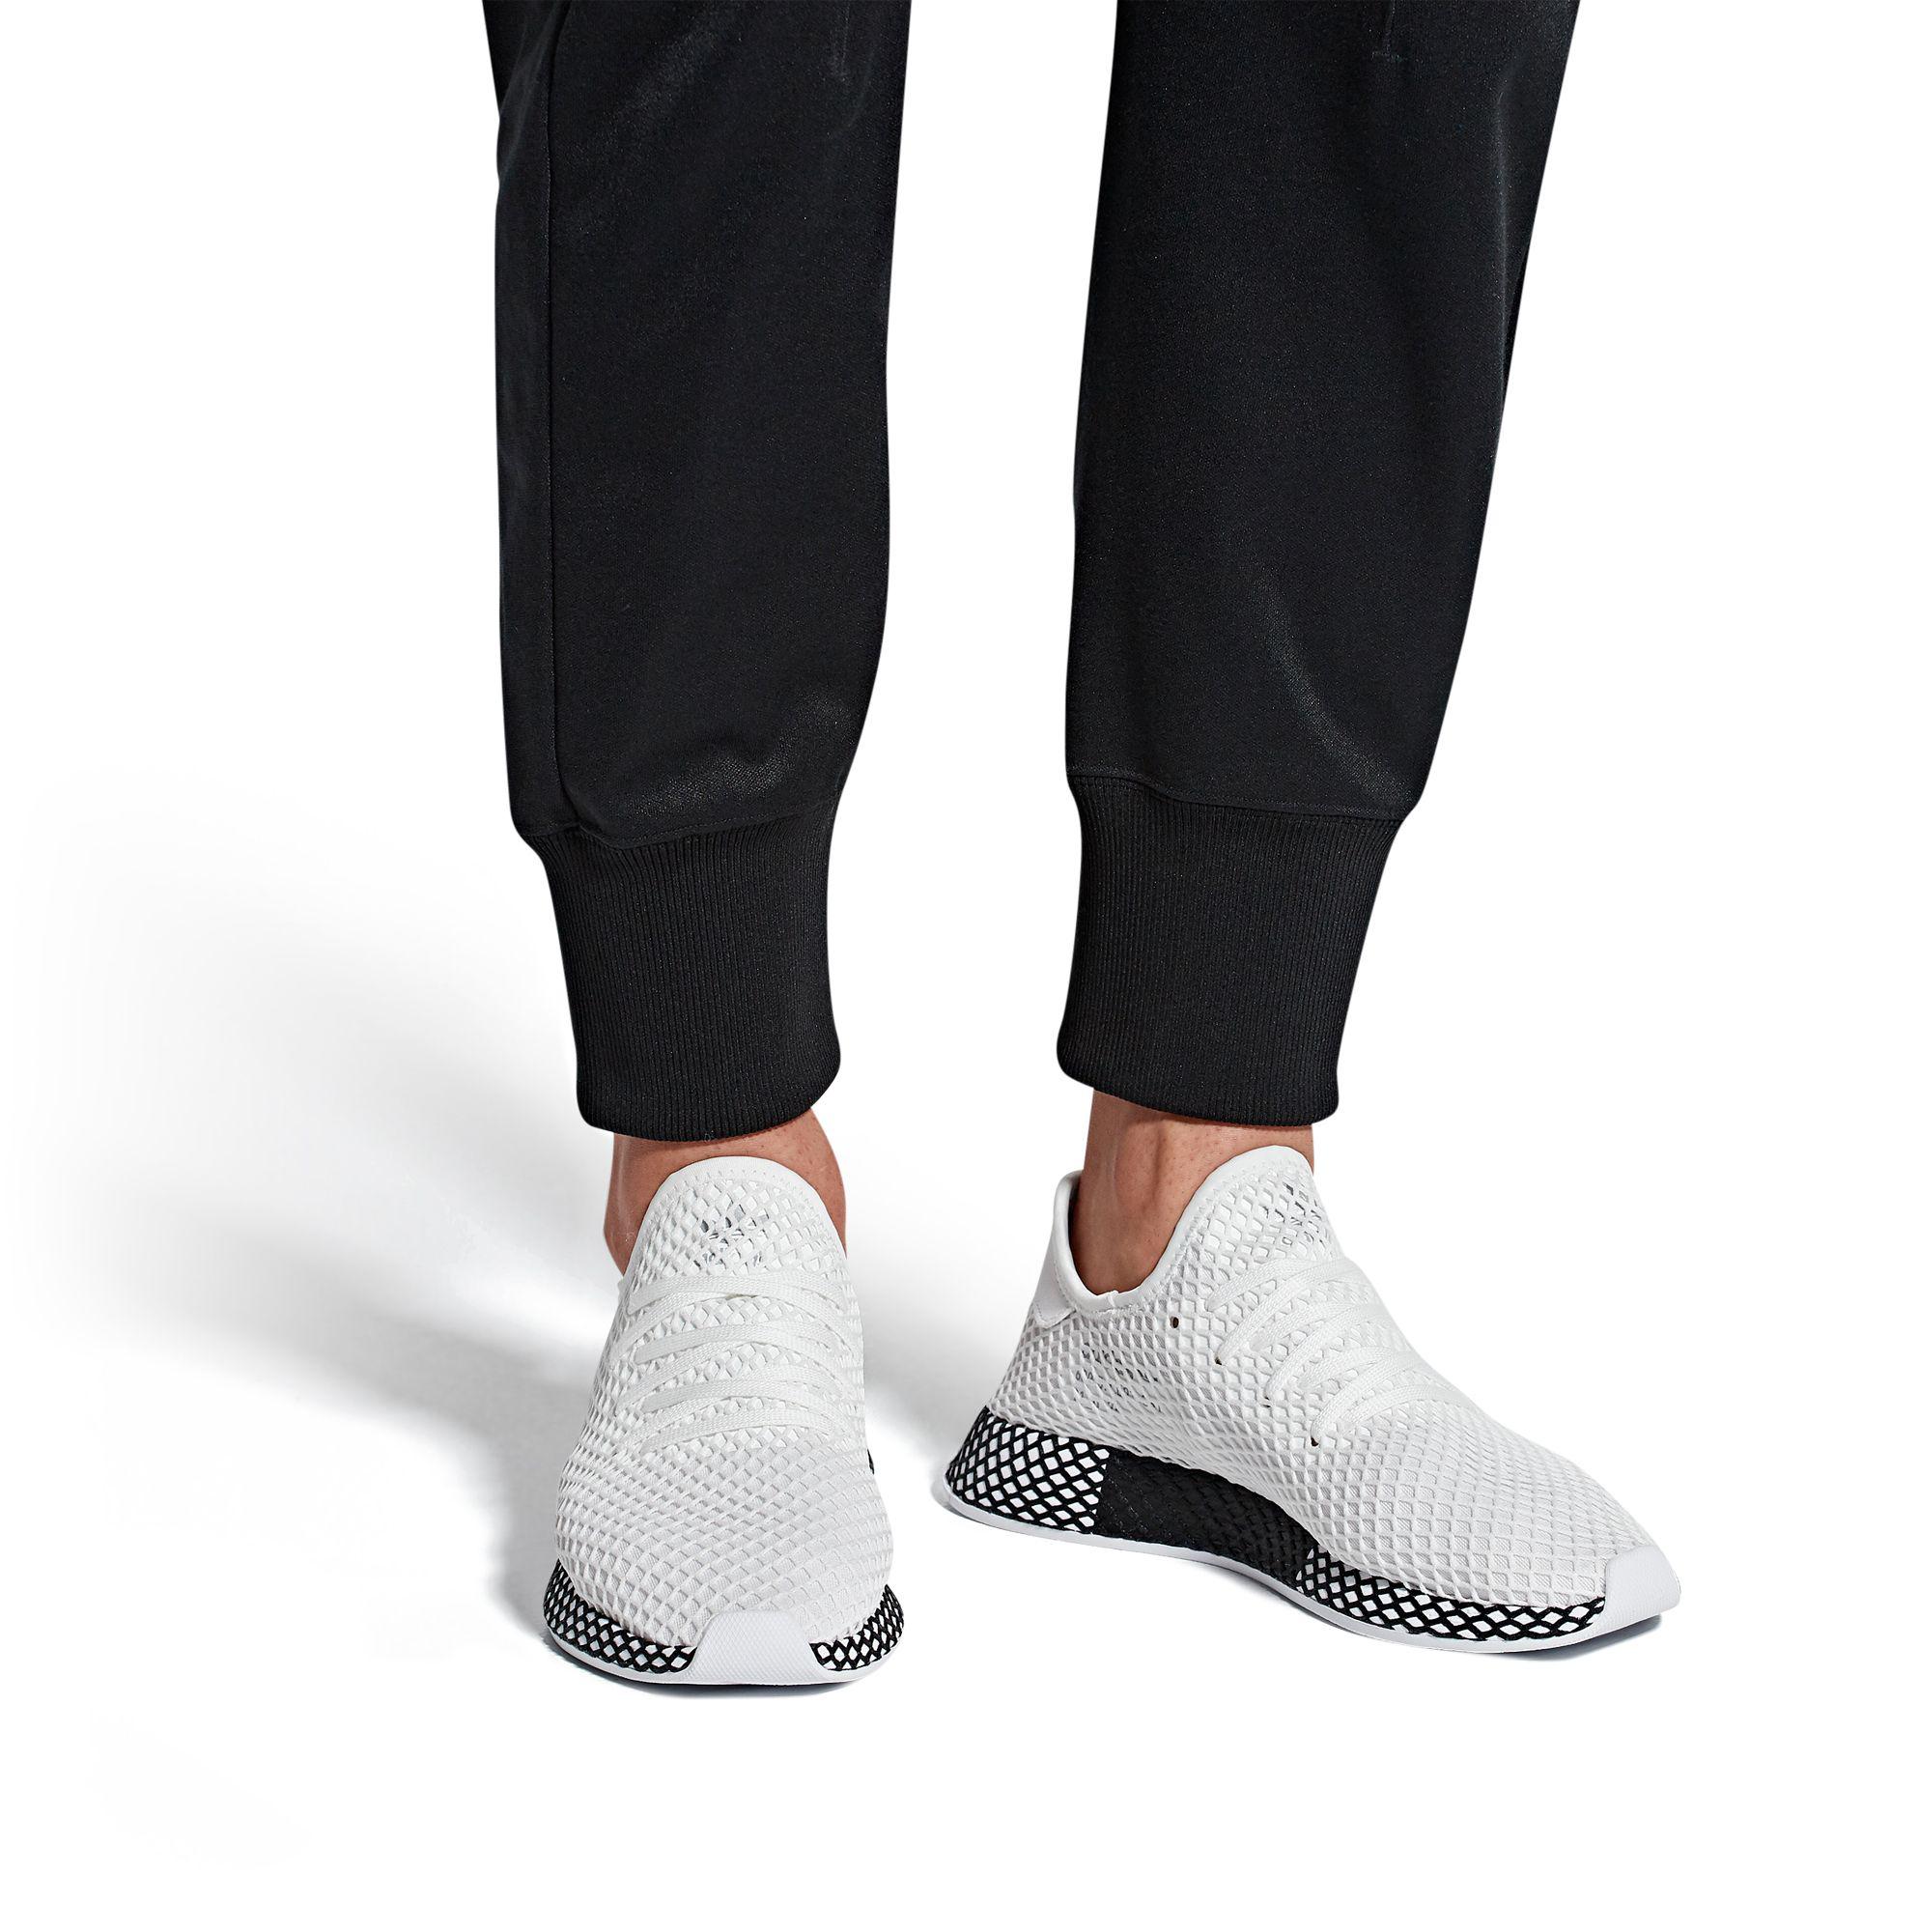 adidas Deerupt Runner in 8.5 (White) for Men - Lyst